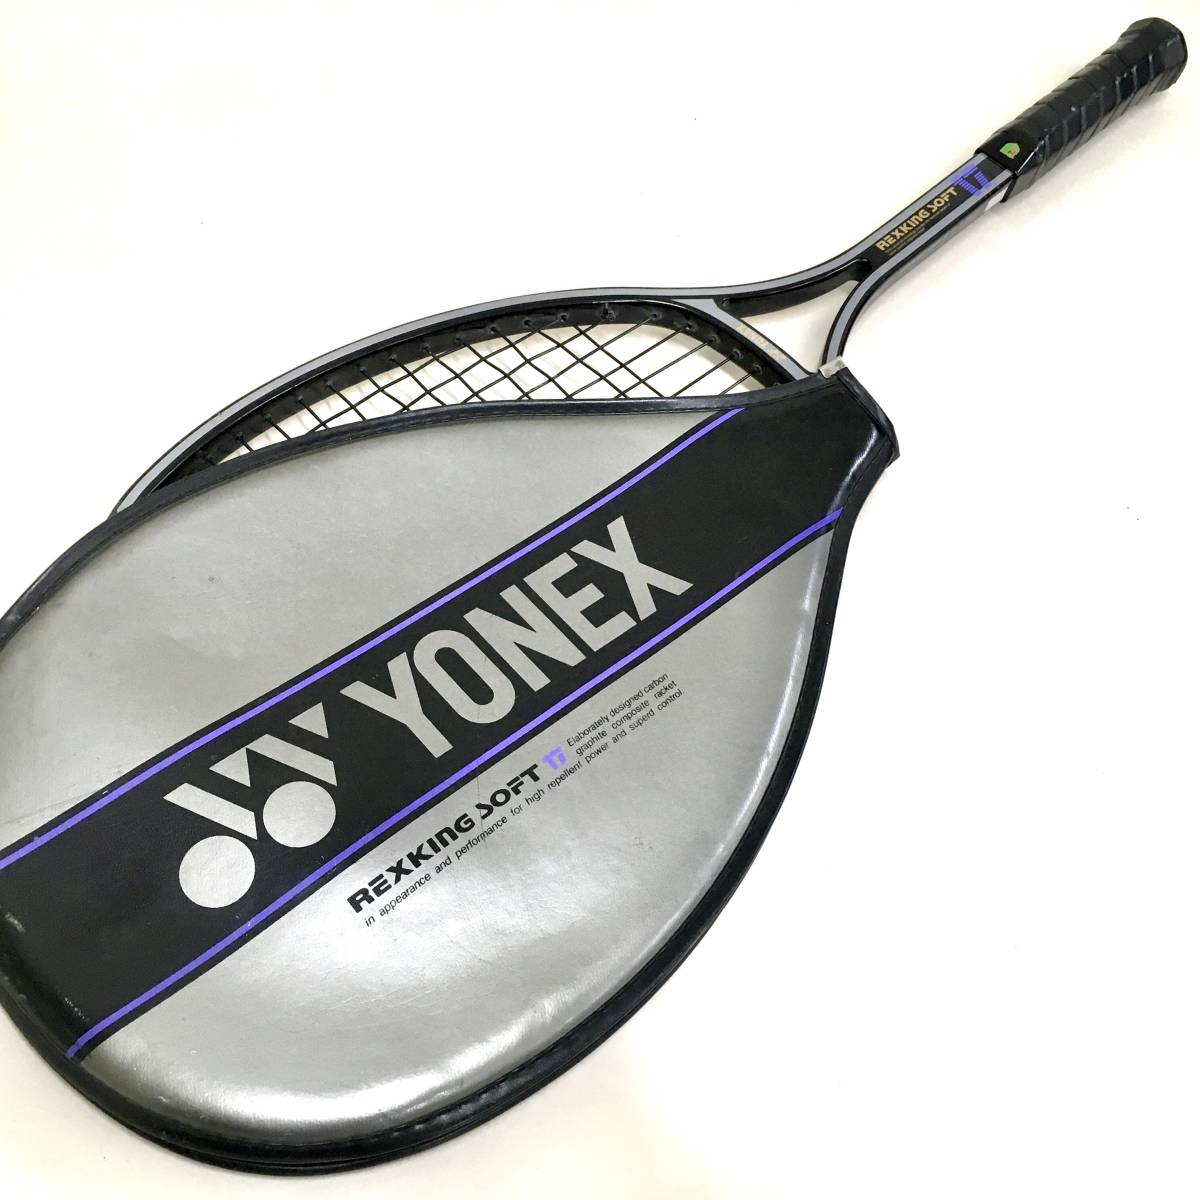 Q テニスラケット レックスキングソフト17 ヨネックス Yonex 軟式ラケット テニス スポーツ用品 レトロ Used ヨネックス 売買されたオークション情報 Yahooの商品情報をアーカイブ公開 オークファン Aucfan Com